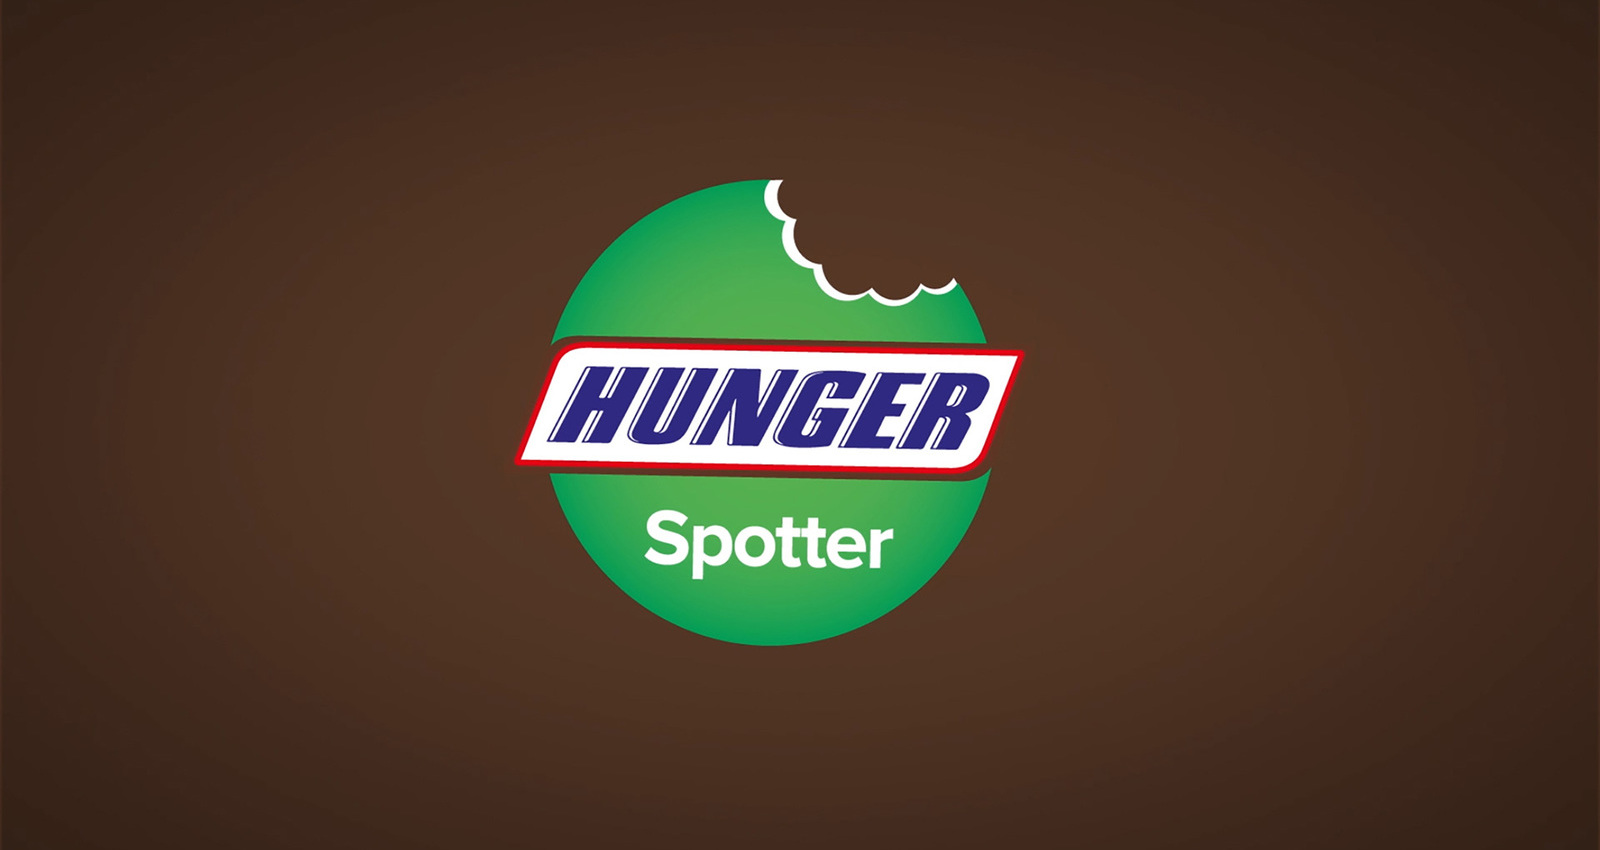 The Hunger Spotter